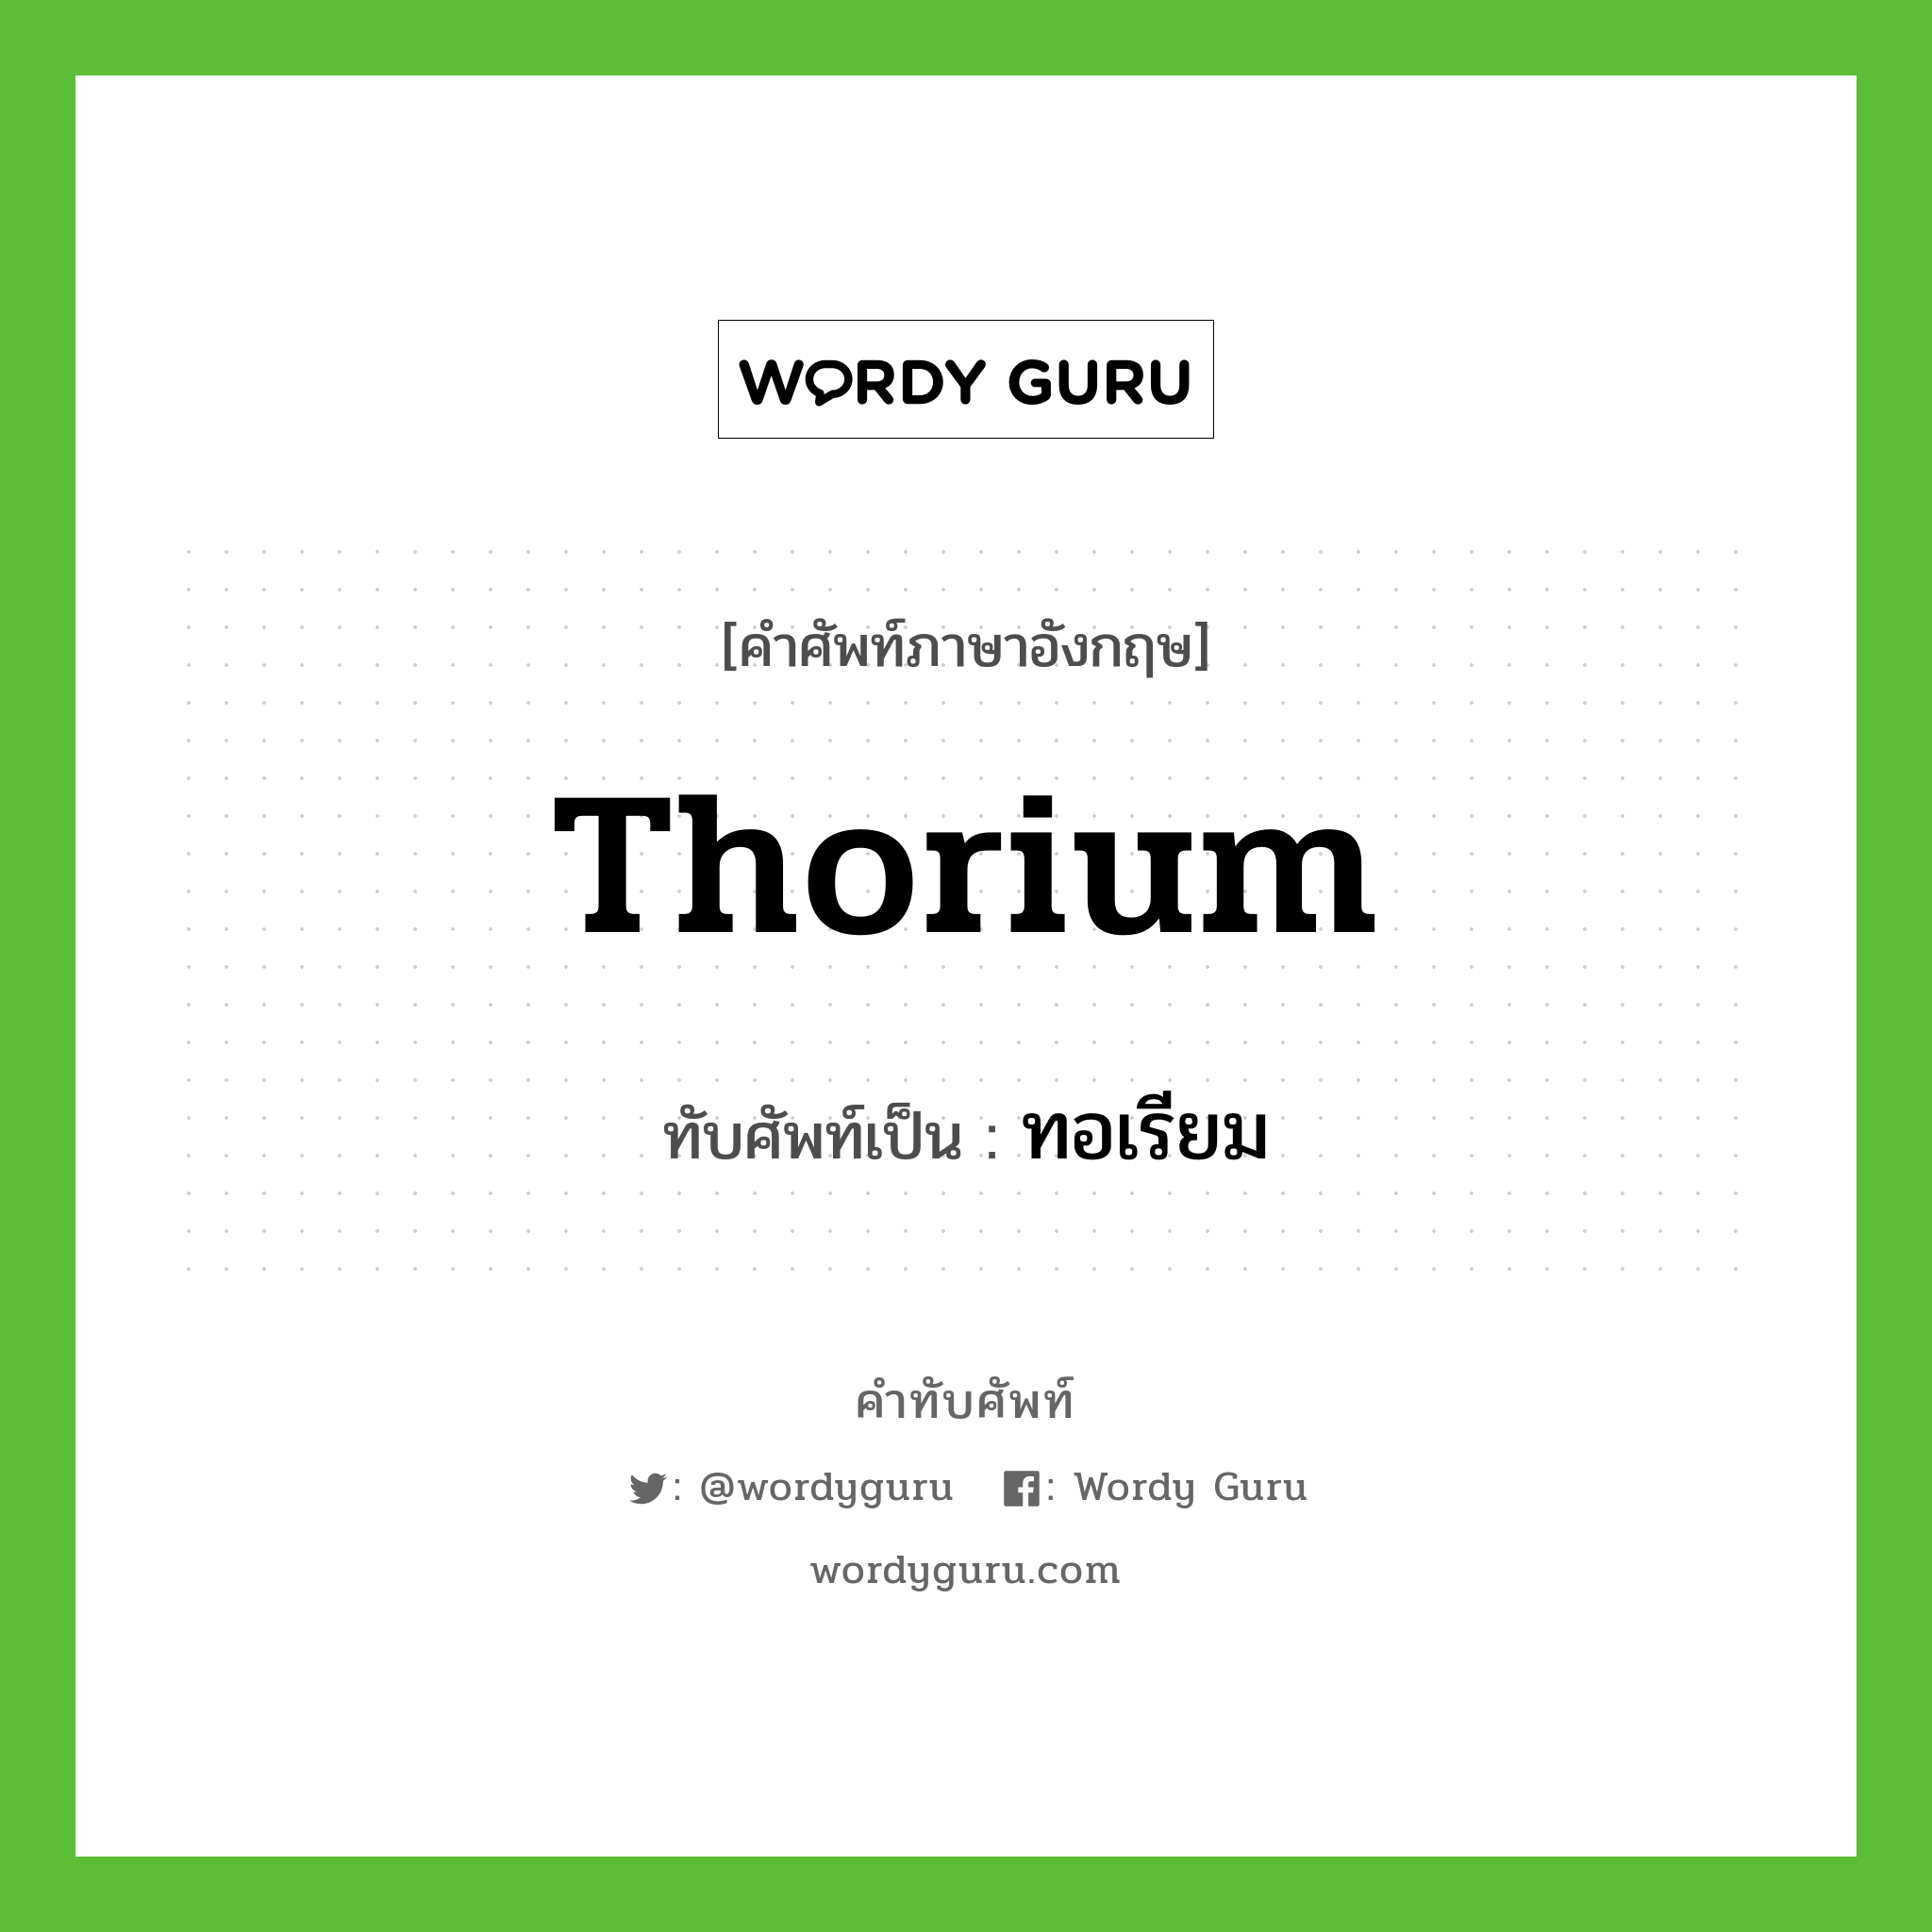 thorium เขียนเป็นคำไทยว่าอะไร?, คำศัพท์ภาษาอังกฤษ thorium ทับศัพท์เป็น ทอเรียม